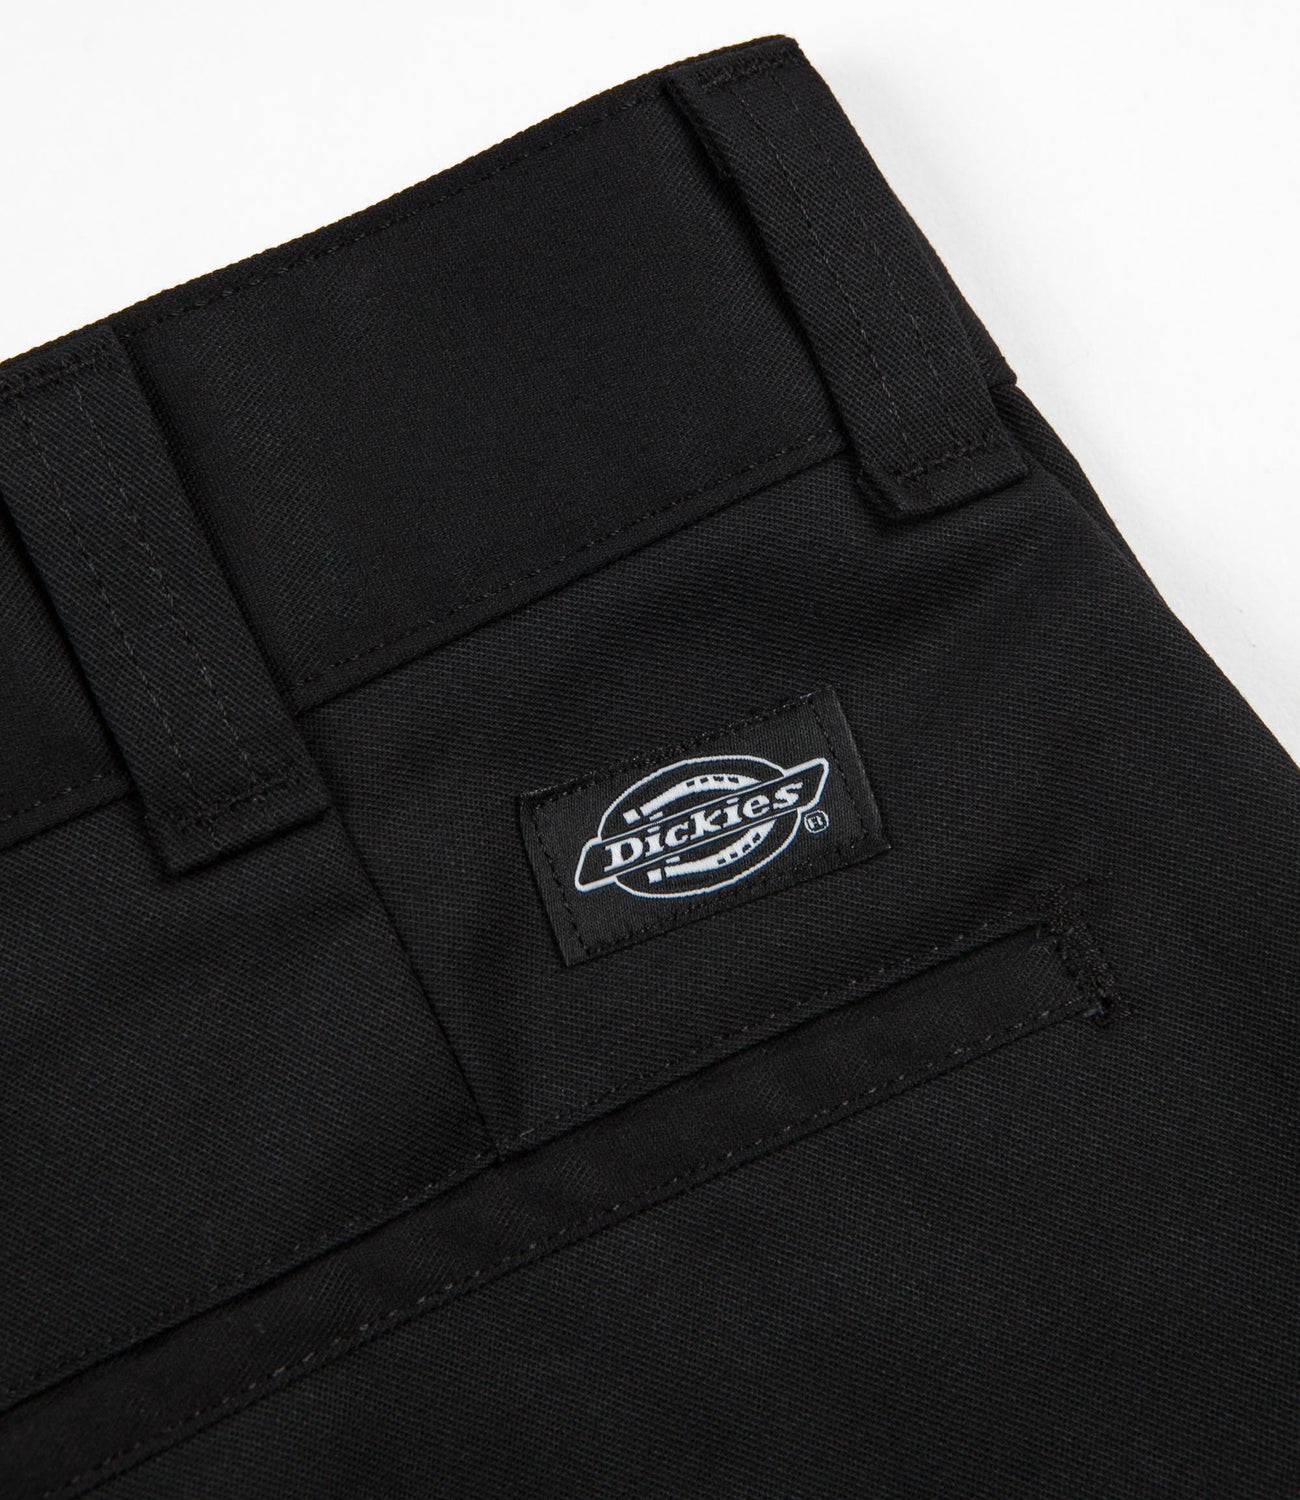 Dickies 894 Industrial Work Trousers - Black | Flatspot